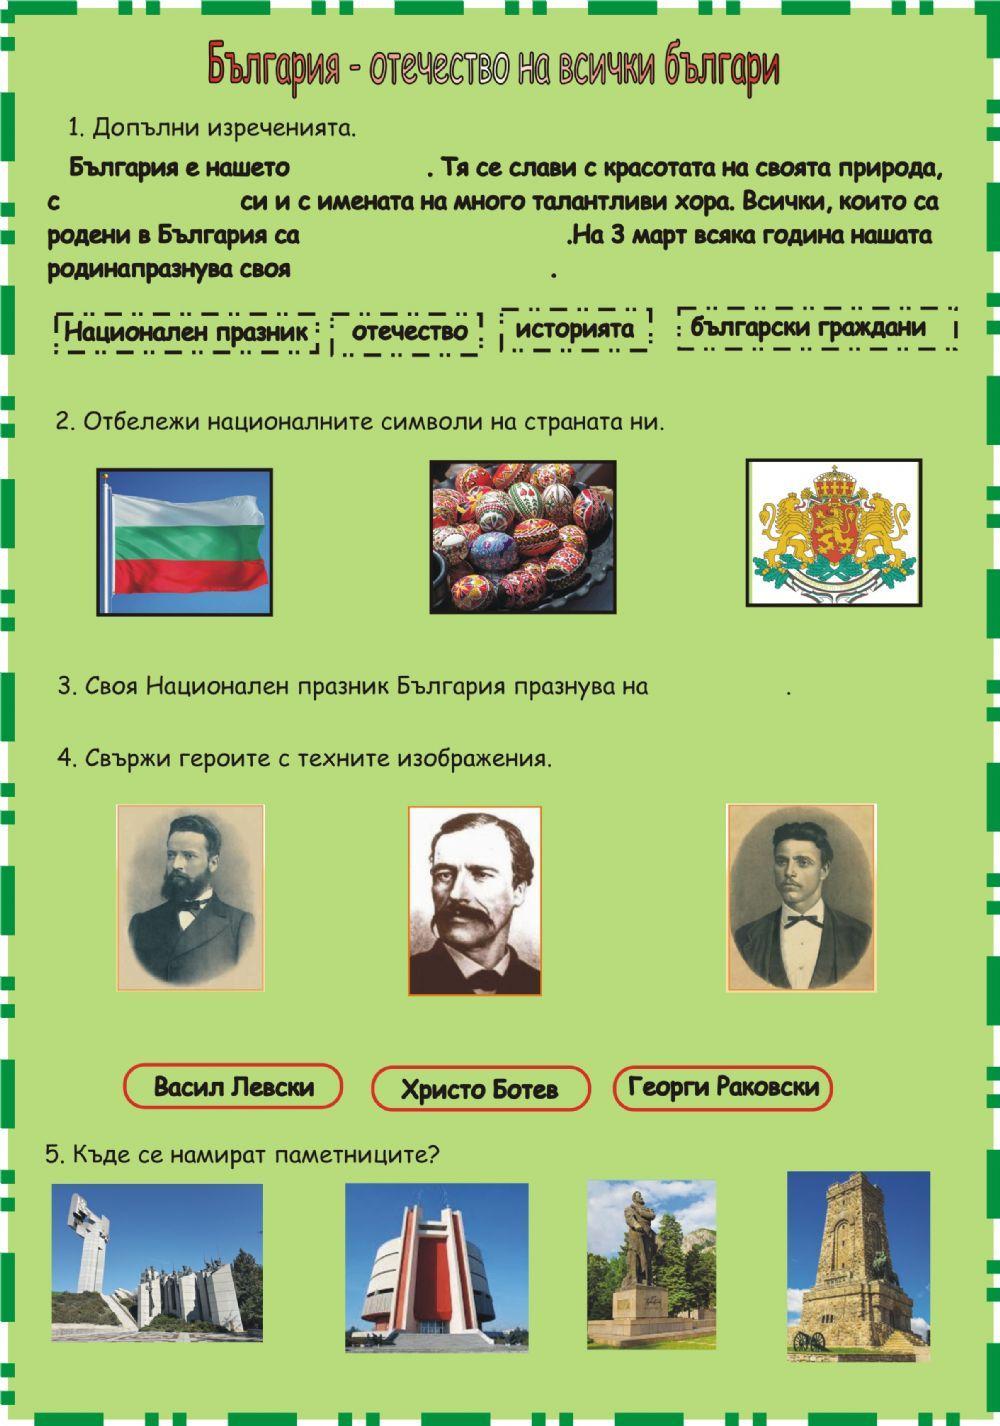 България отечество на всички българи